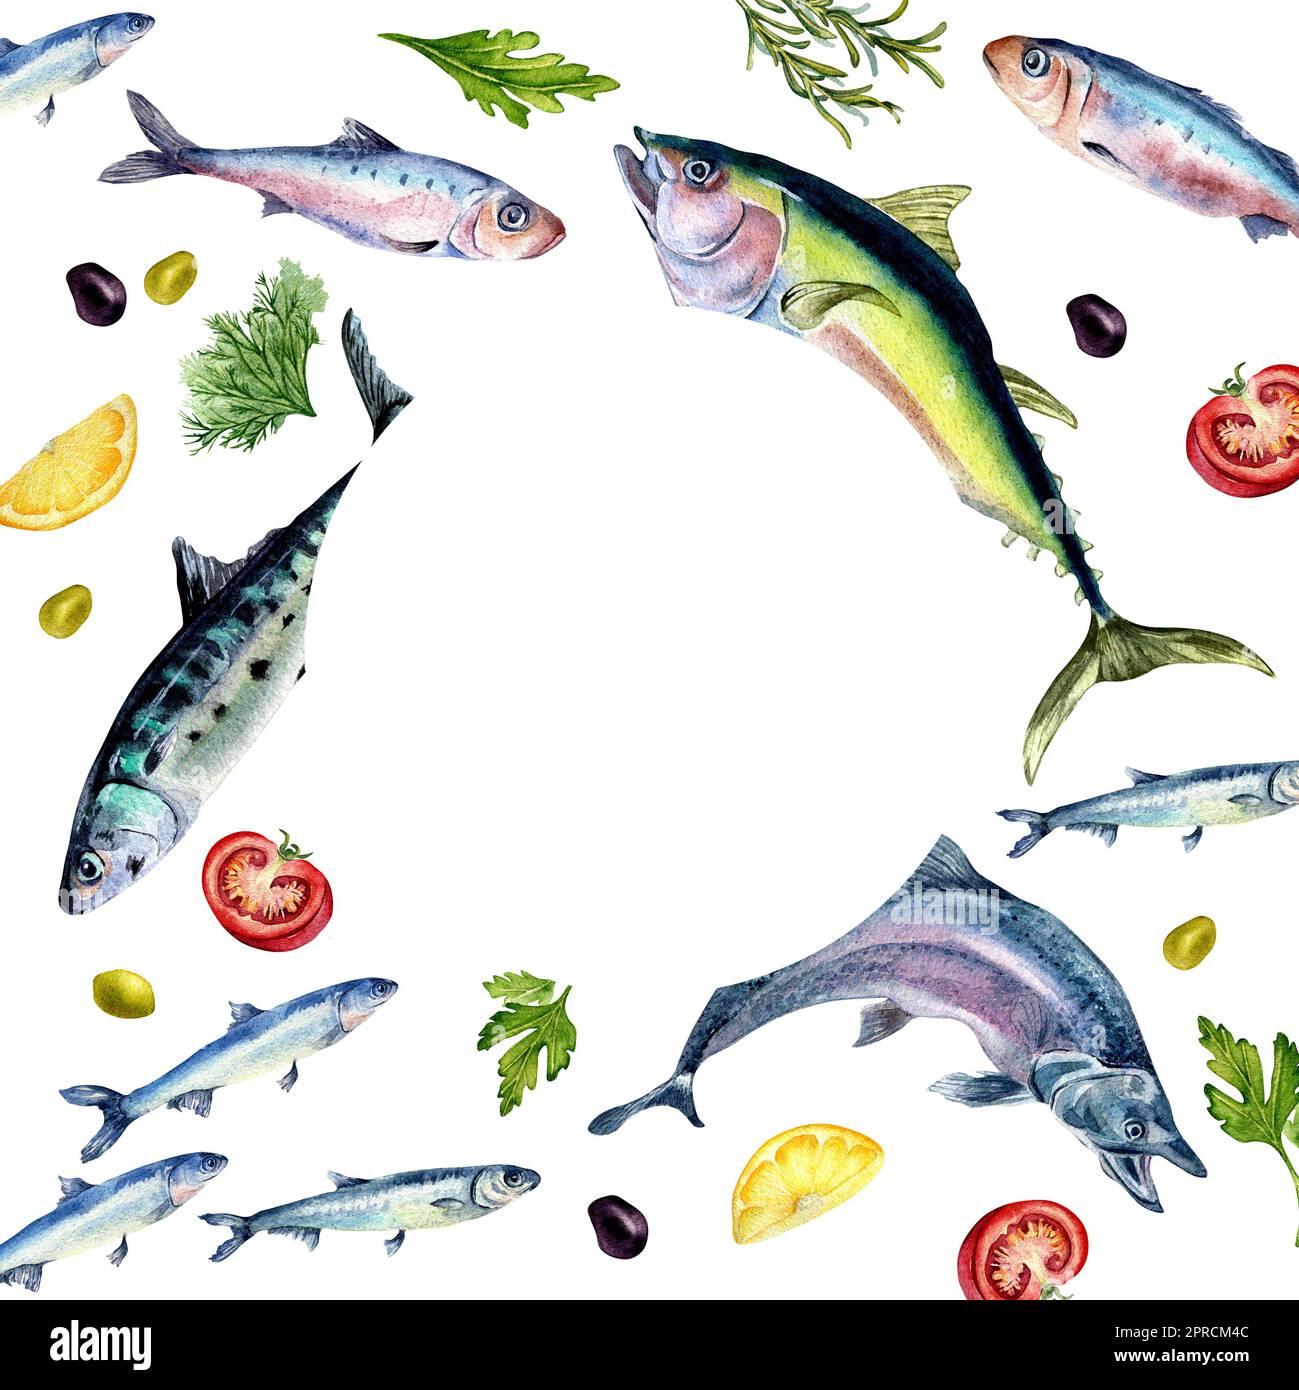 Cadre de poissons frais et épices aquarelle illustration isolée sur blanc. Poisson sauvage, thon, saumon, hareng, anchois, tomates dessinées à la main. Oreme de conception Banque D'Images